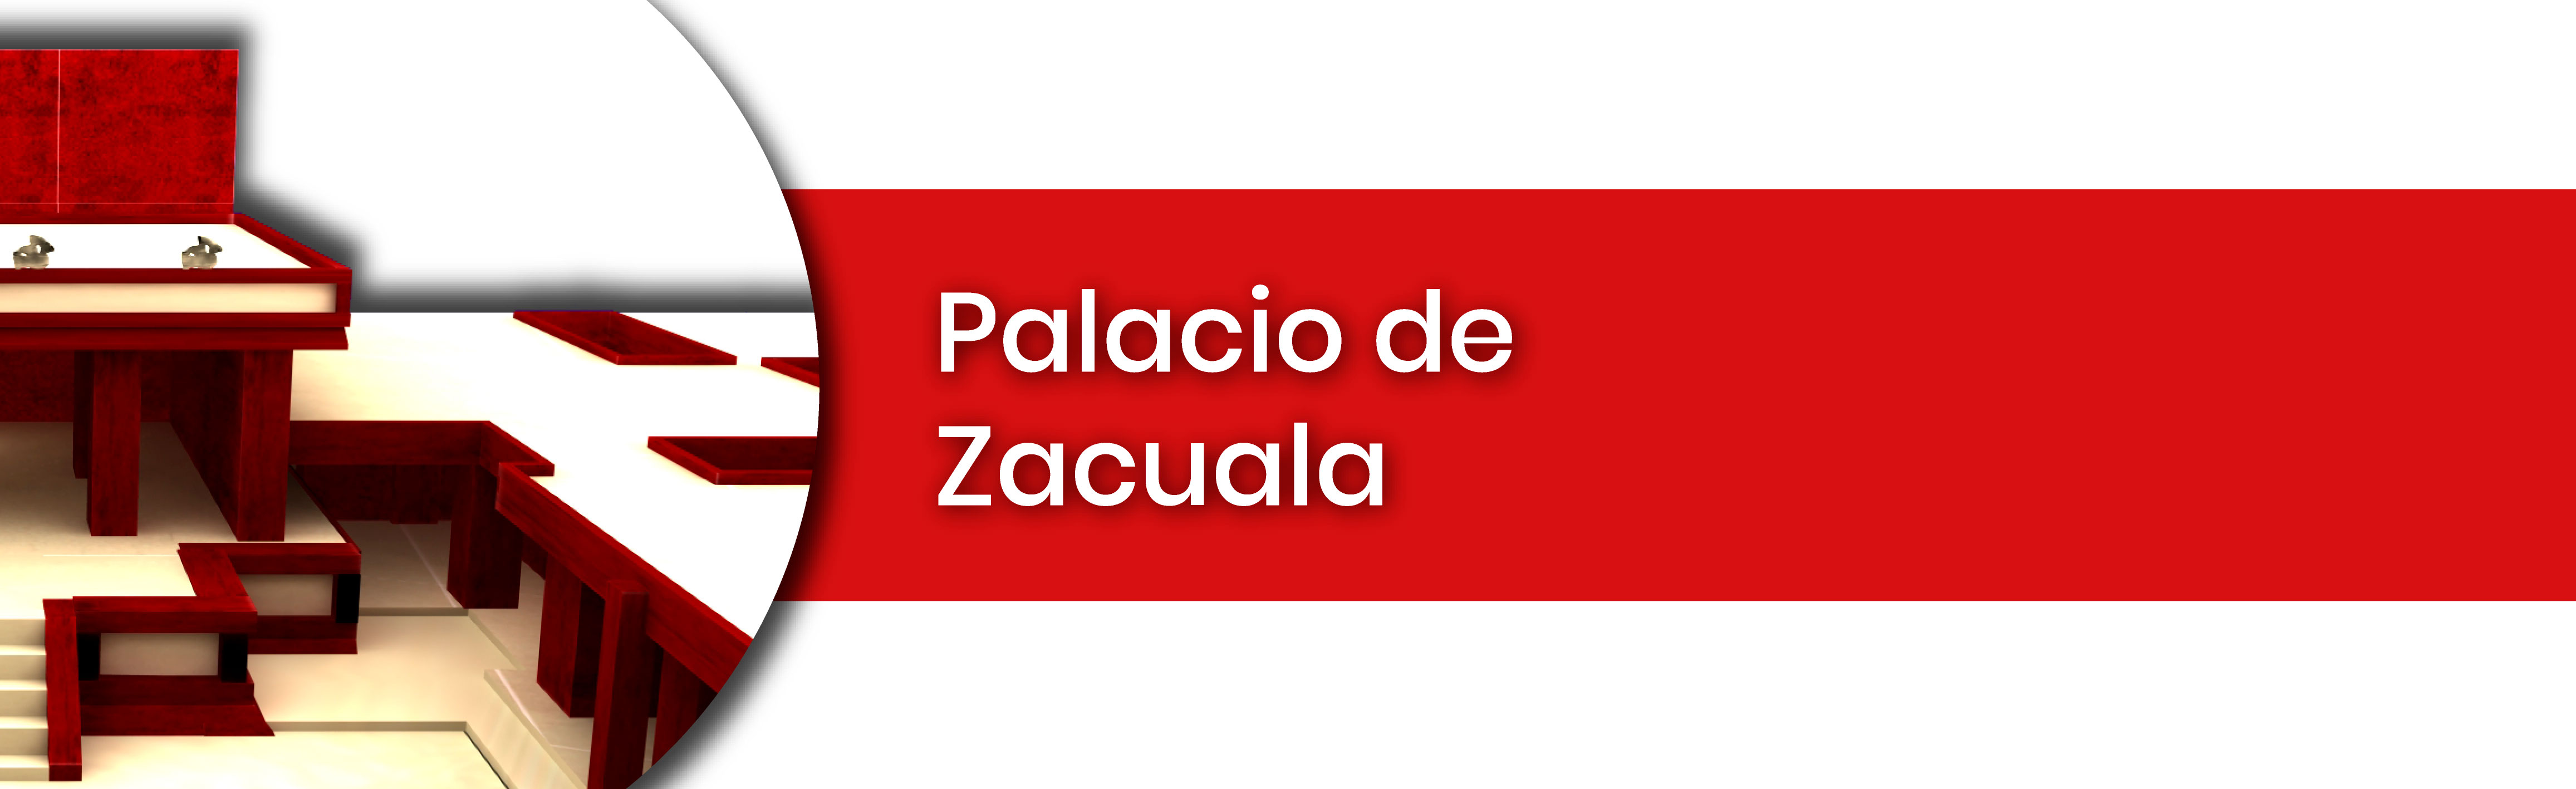 Palacio de Zacuala